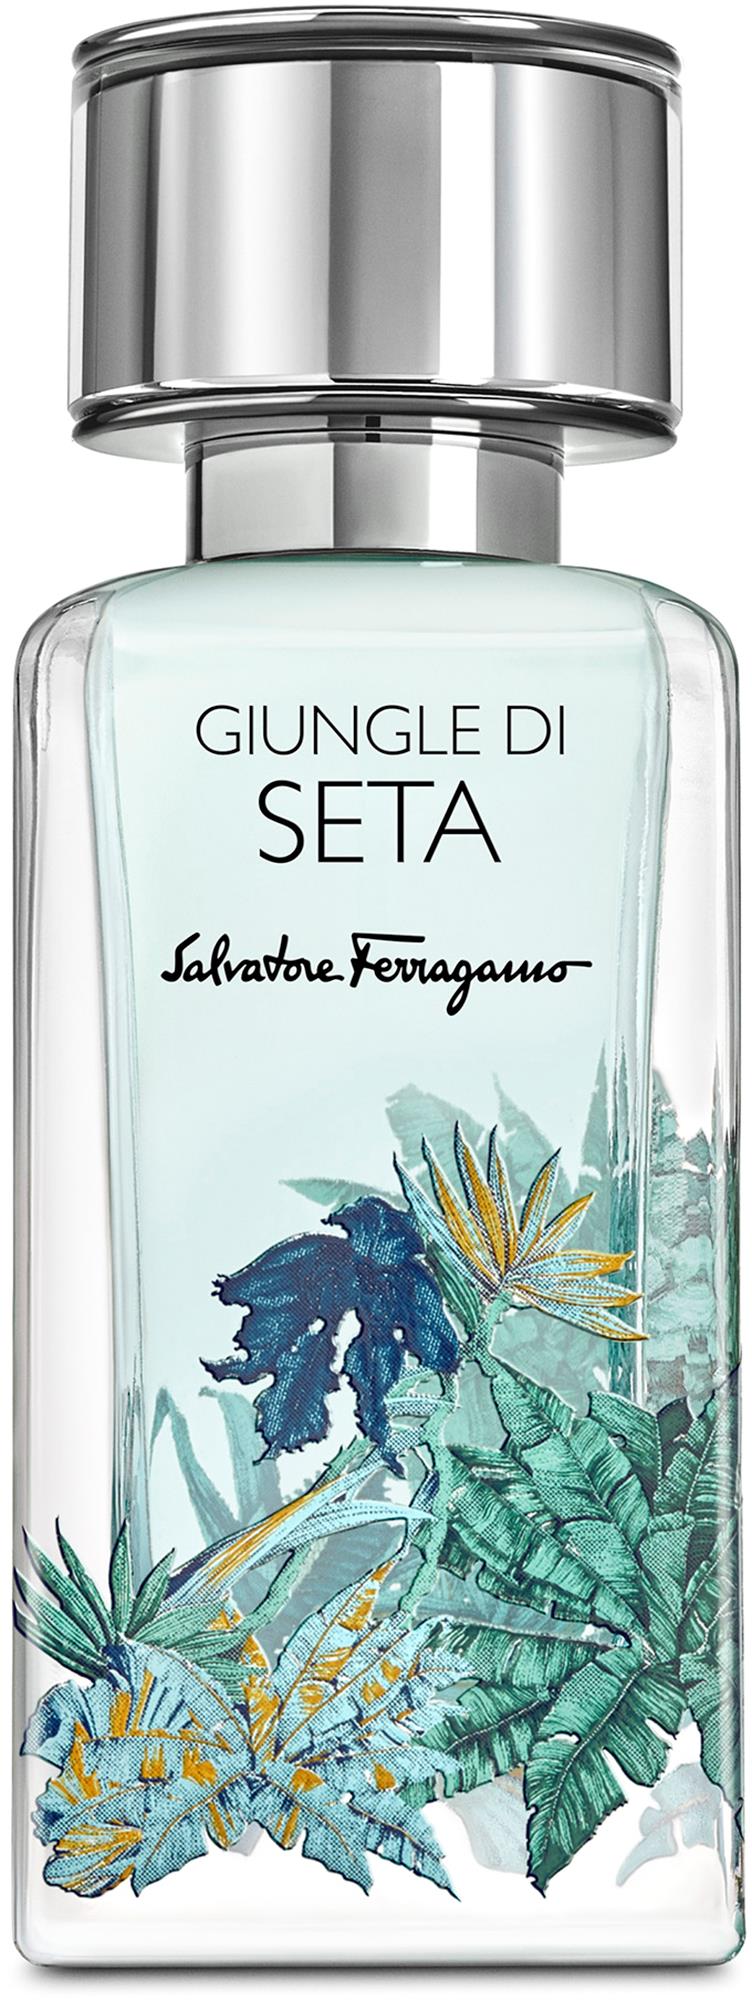 Salvatore Ferragamo Giungle di Seta Eau de Parfum 50 ml | lyko.com